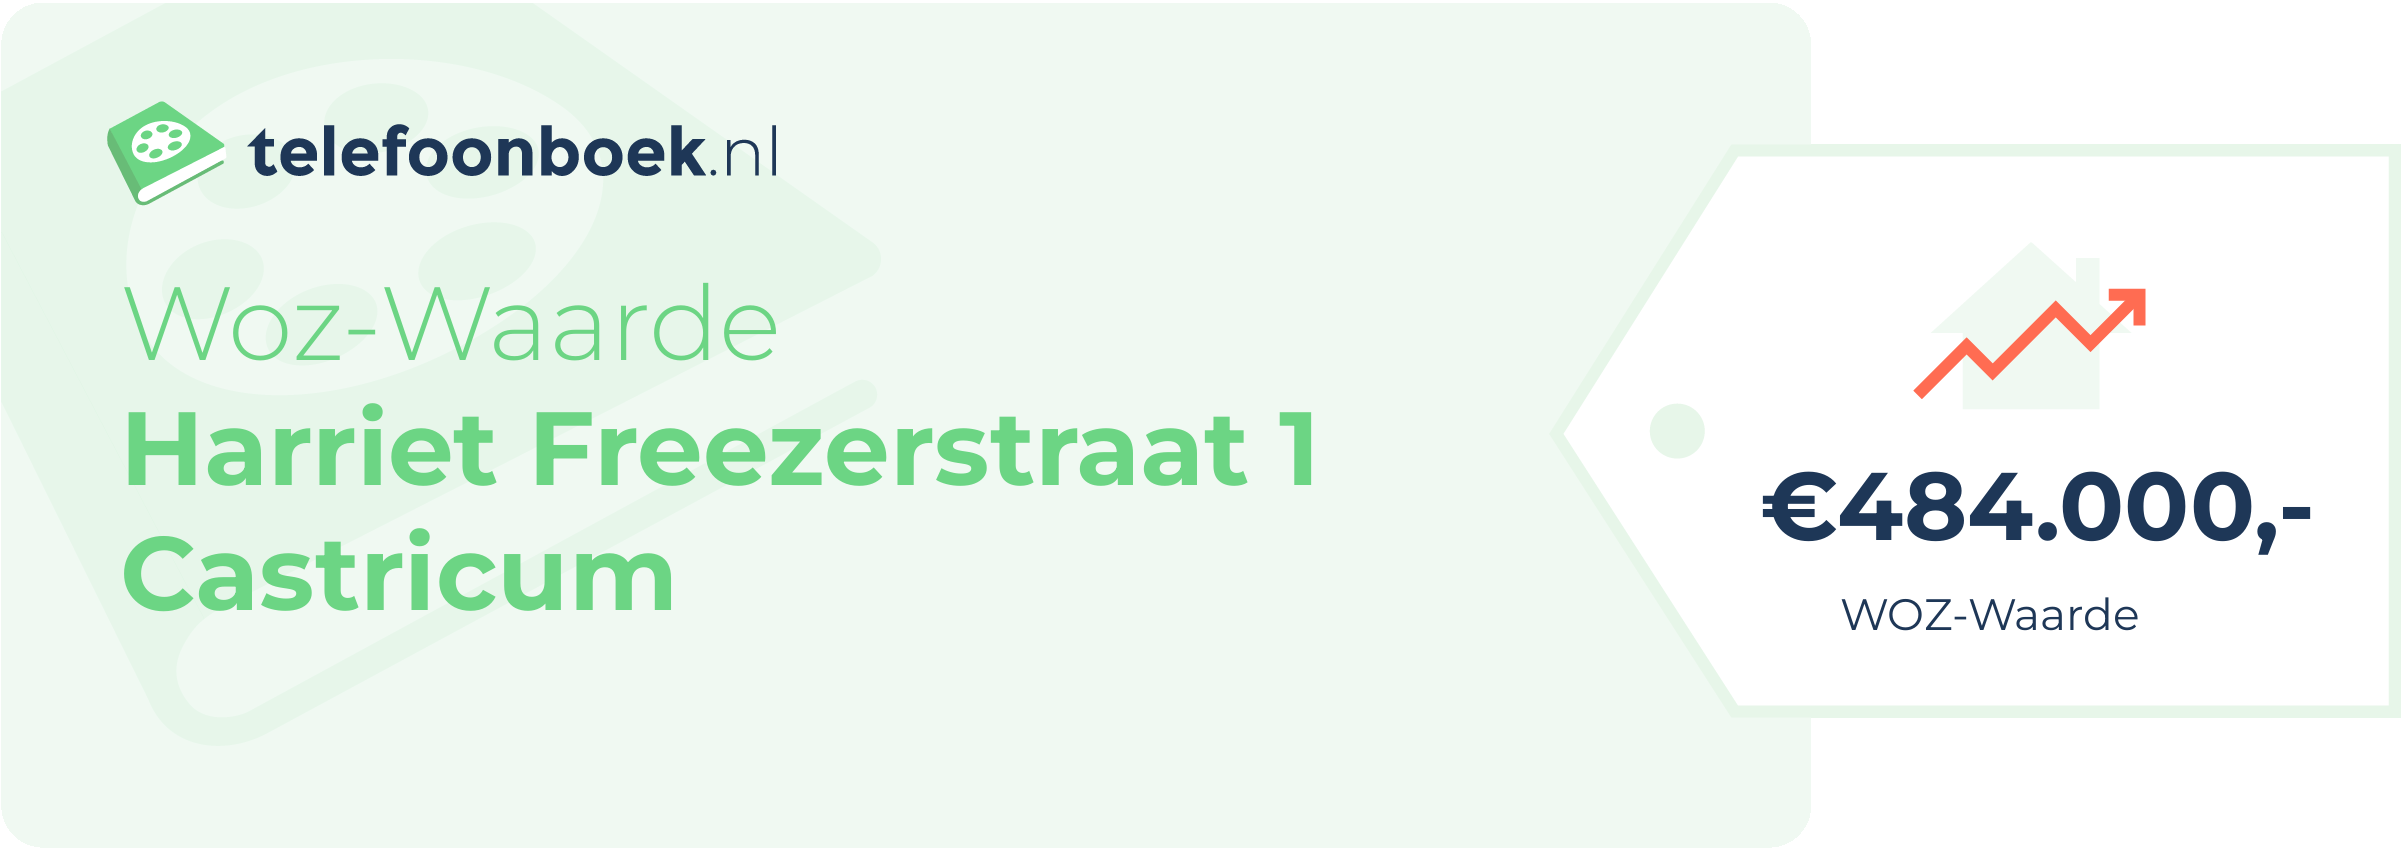 WOZ-waarde Harriet Freezerstraat 1 Castricum